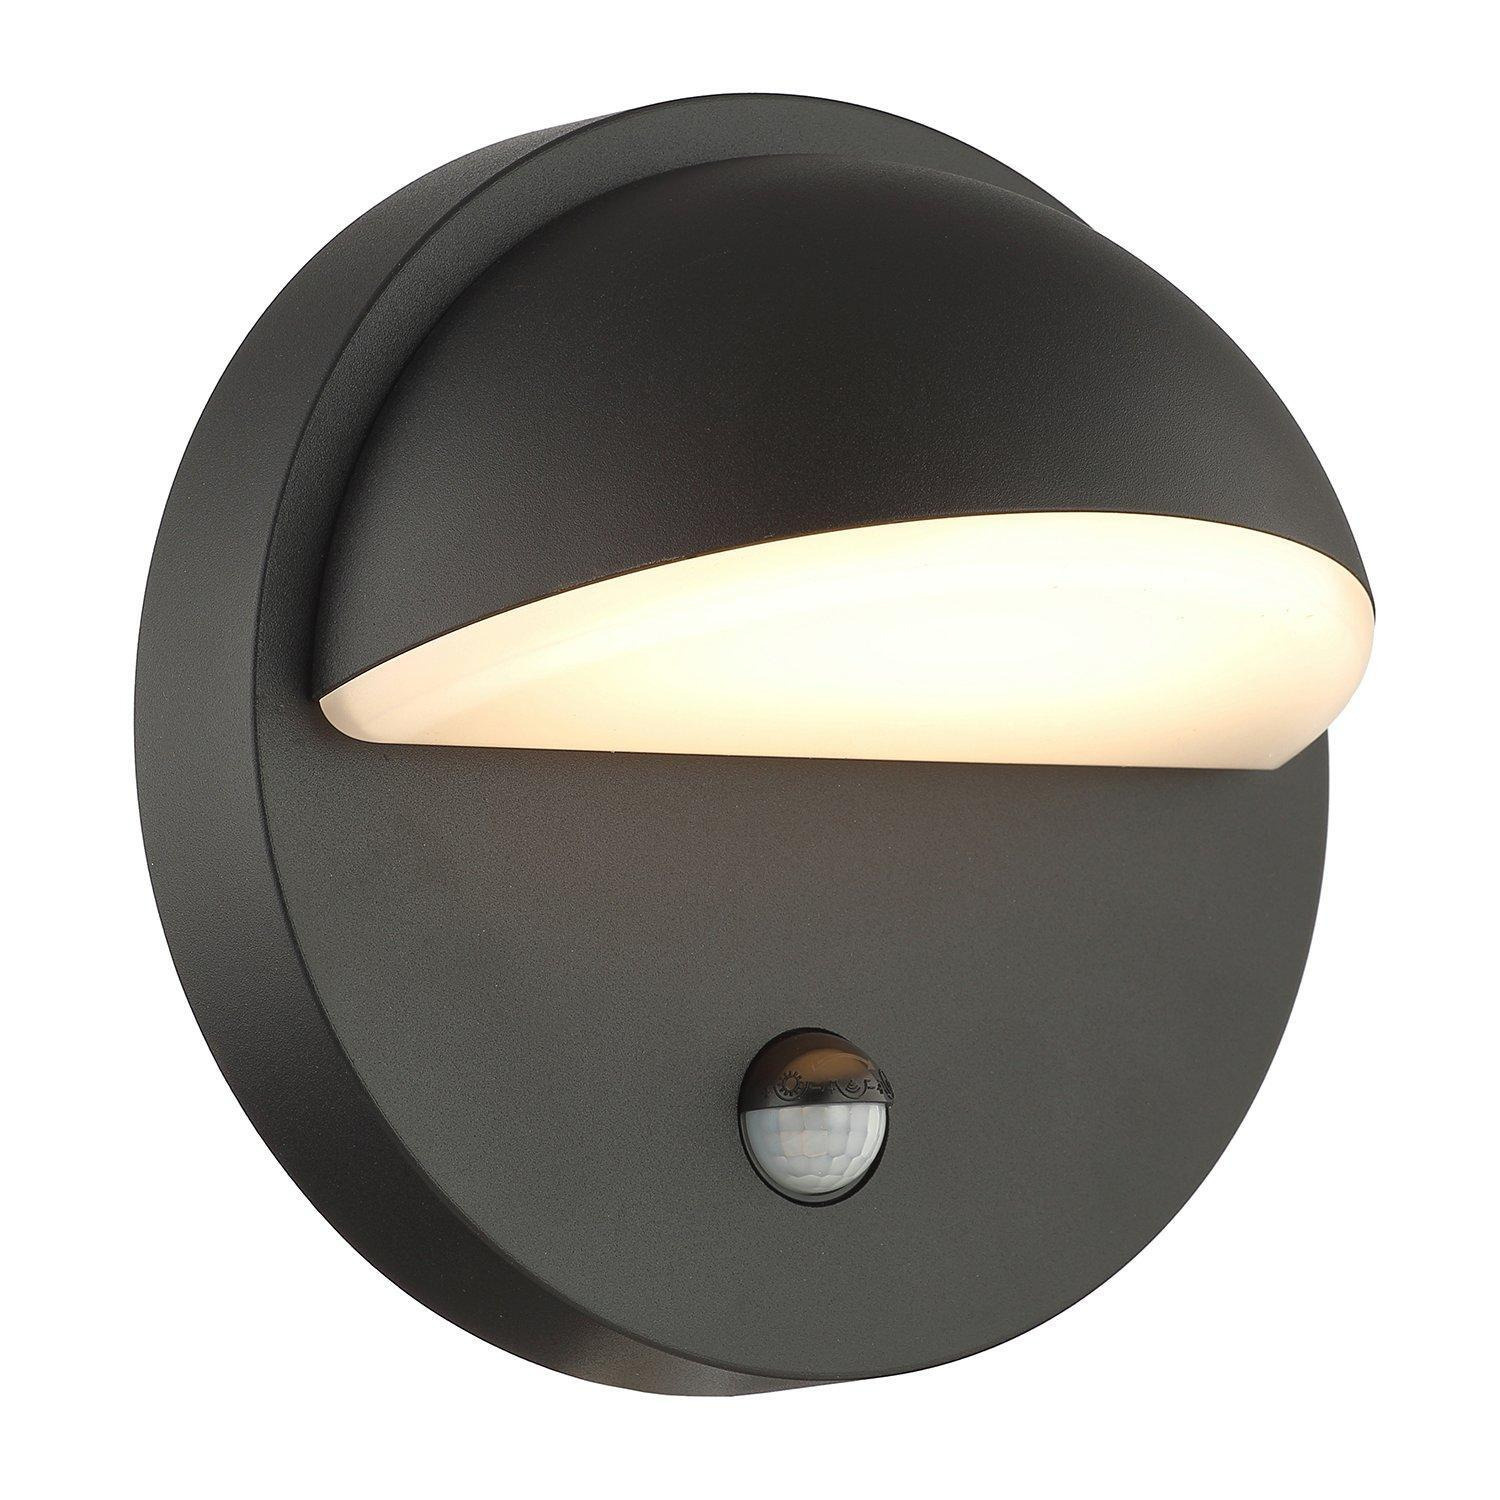 Modern Designer PIR Sensor LED Outdoor Wall Light Fitting with Matt Black Body - image 1